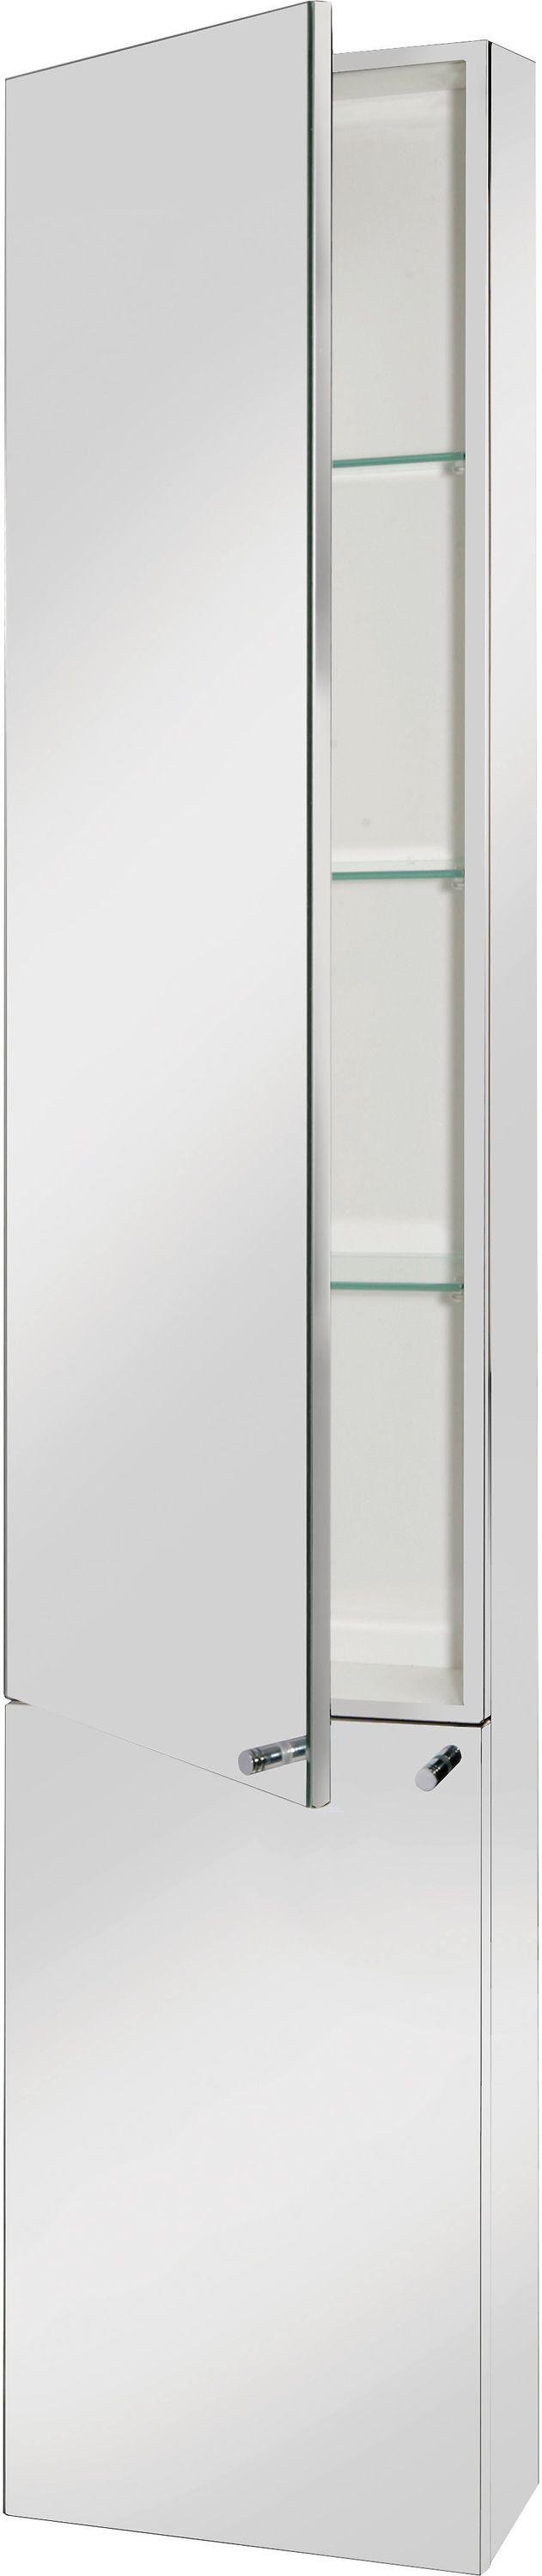 Croydex Nile Tall Cabinet - Chrome.